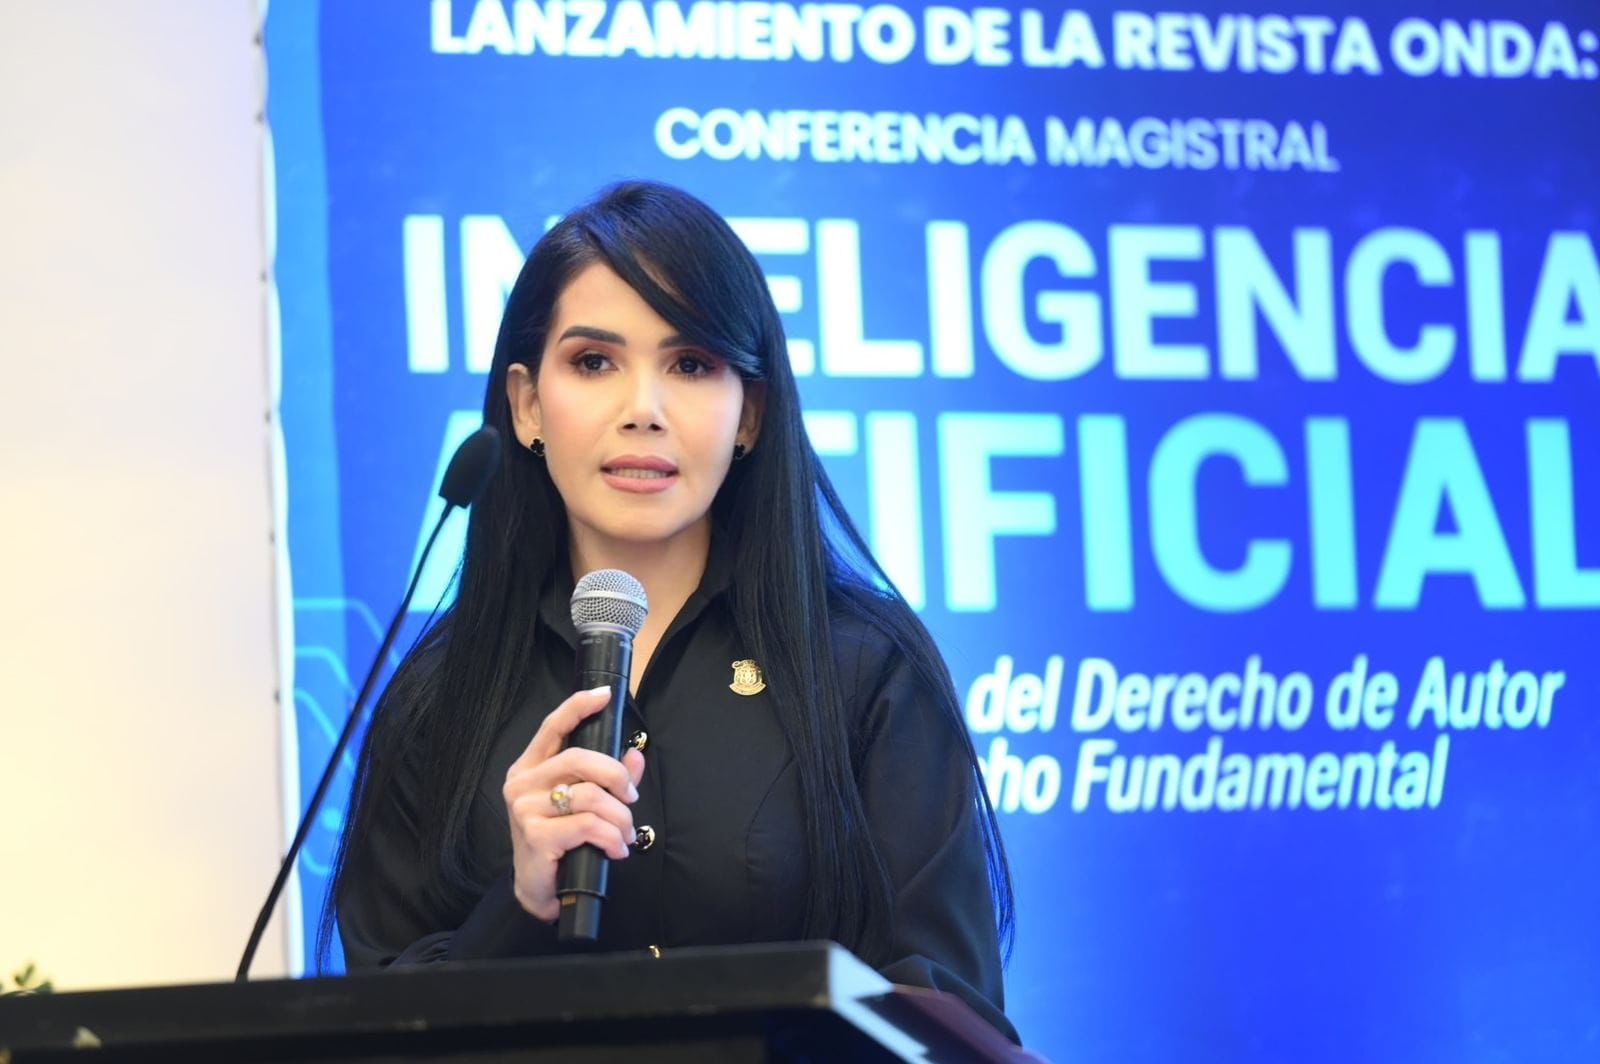 Magistrada del TC Army Ferreira dicta conferencia sobre IA y protección de derecho de autor